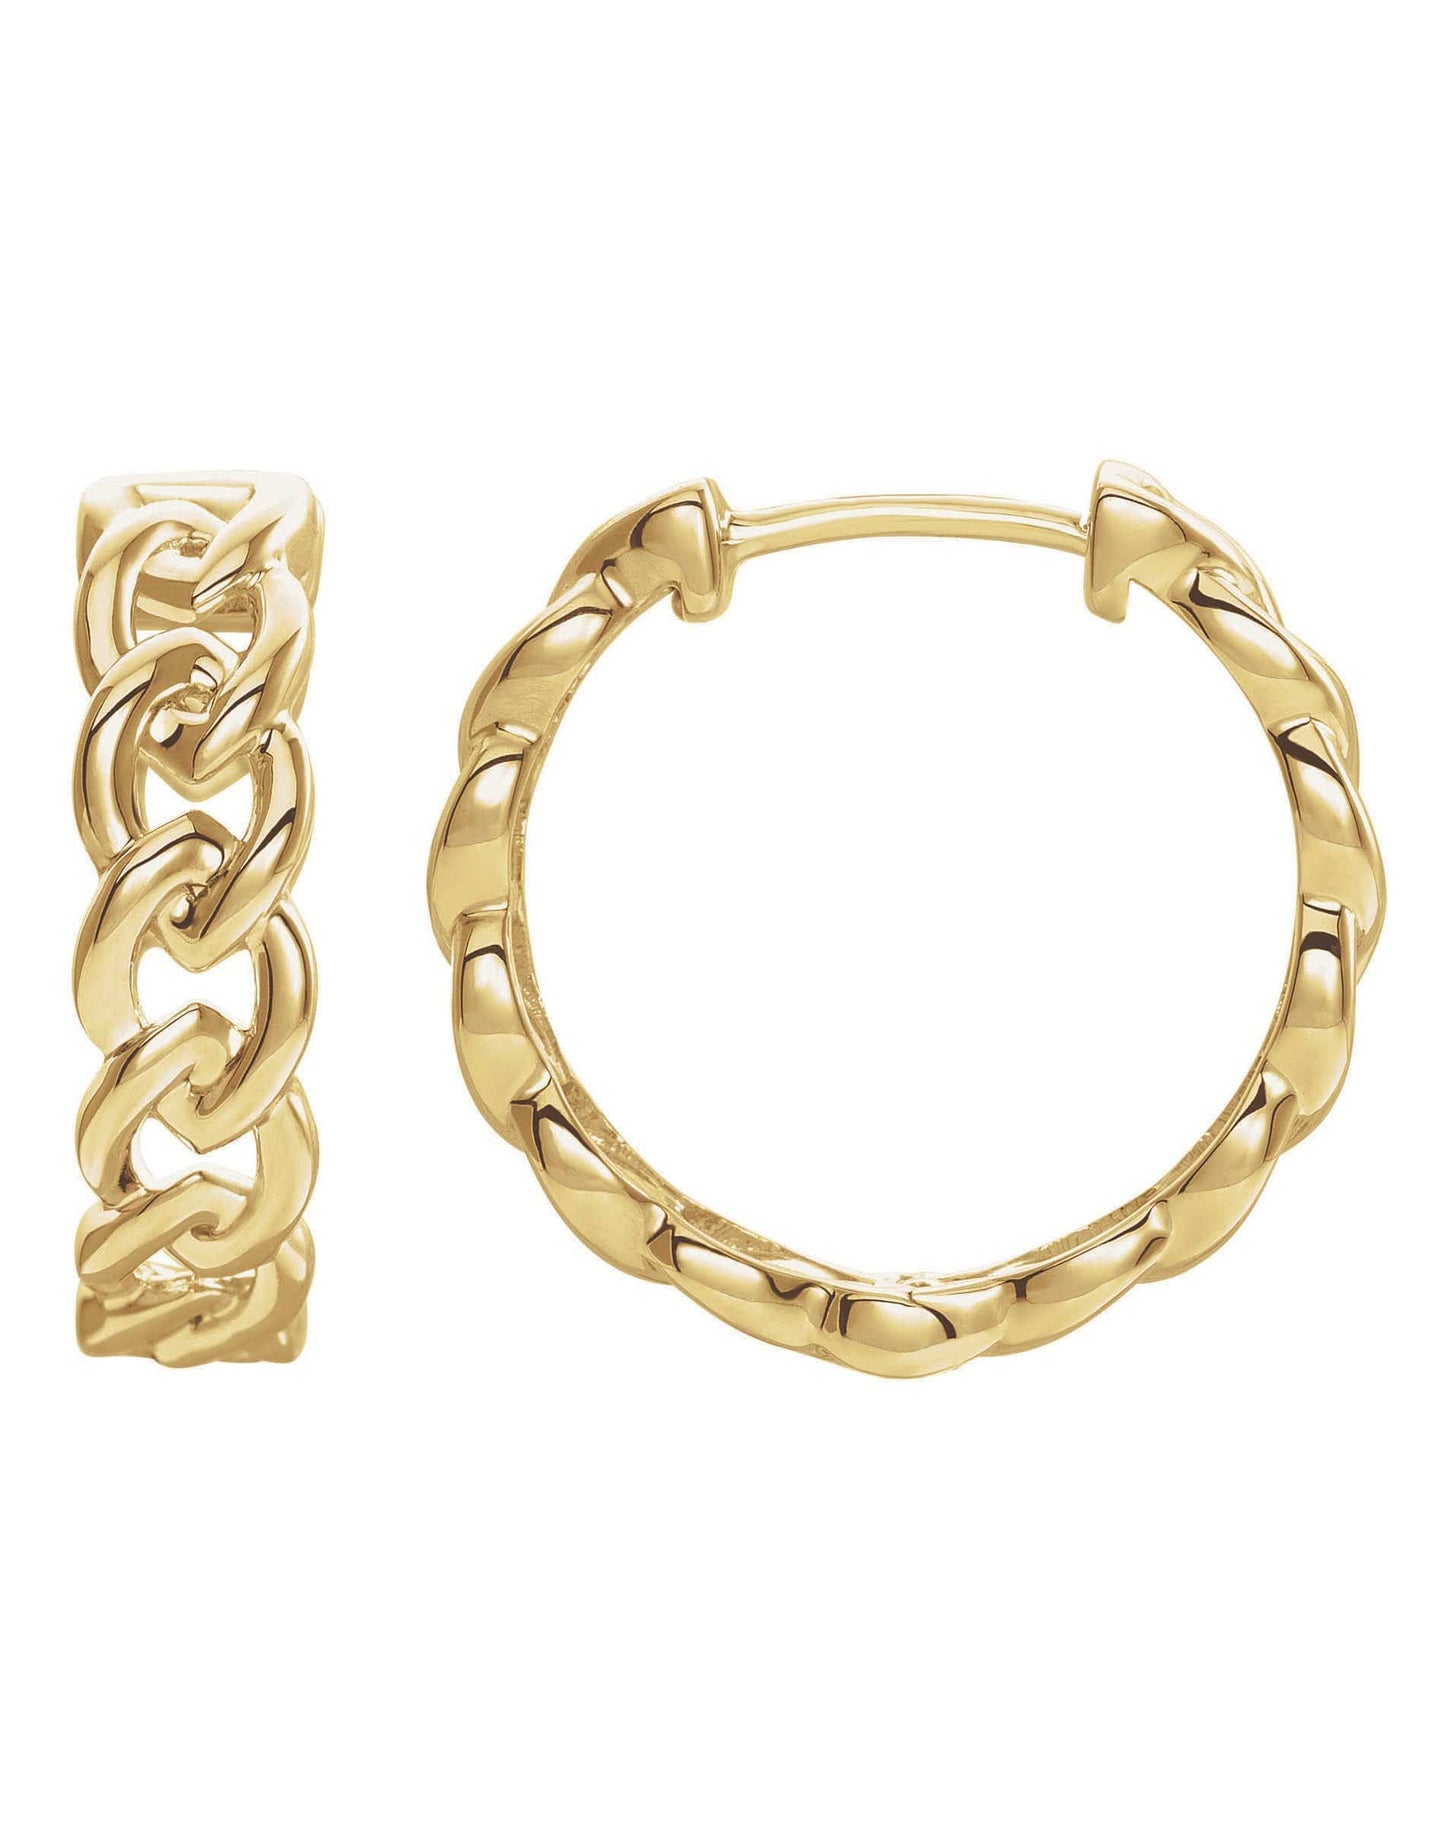 302 FINE JEWELRY-Chain Link Hoop Earrings-YELLOW GOLD